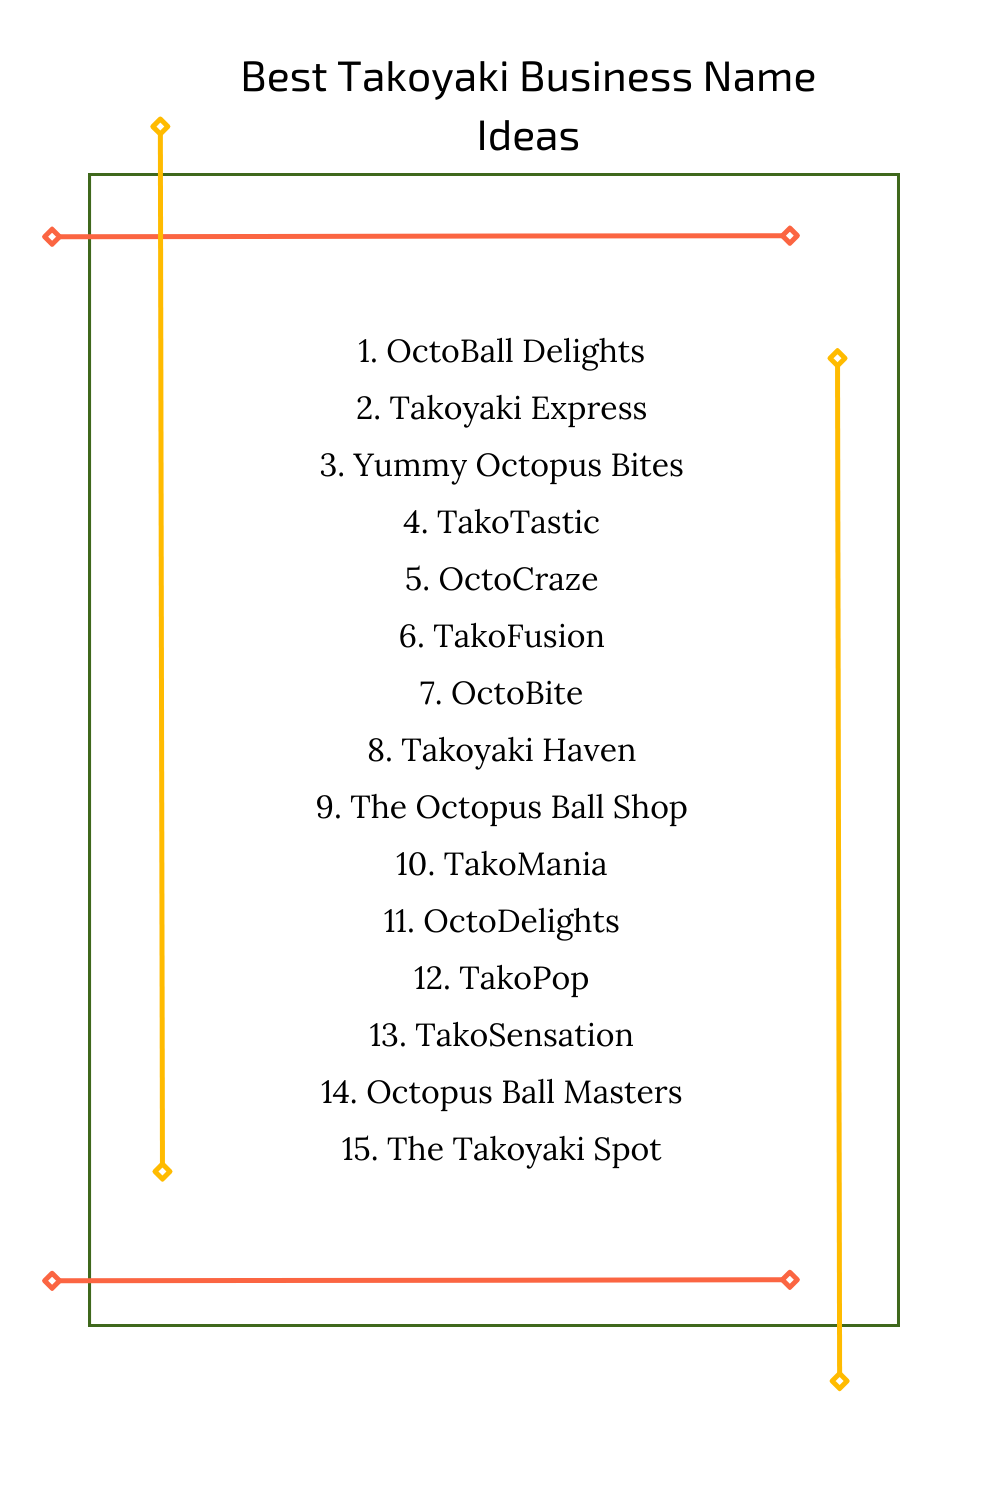 Best Takoyaki Business Name Ideas